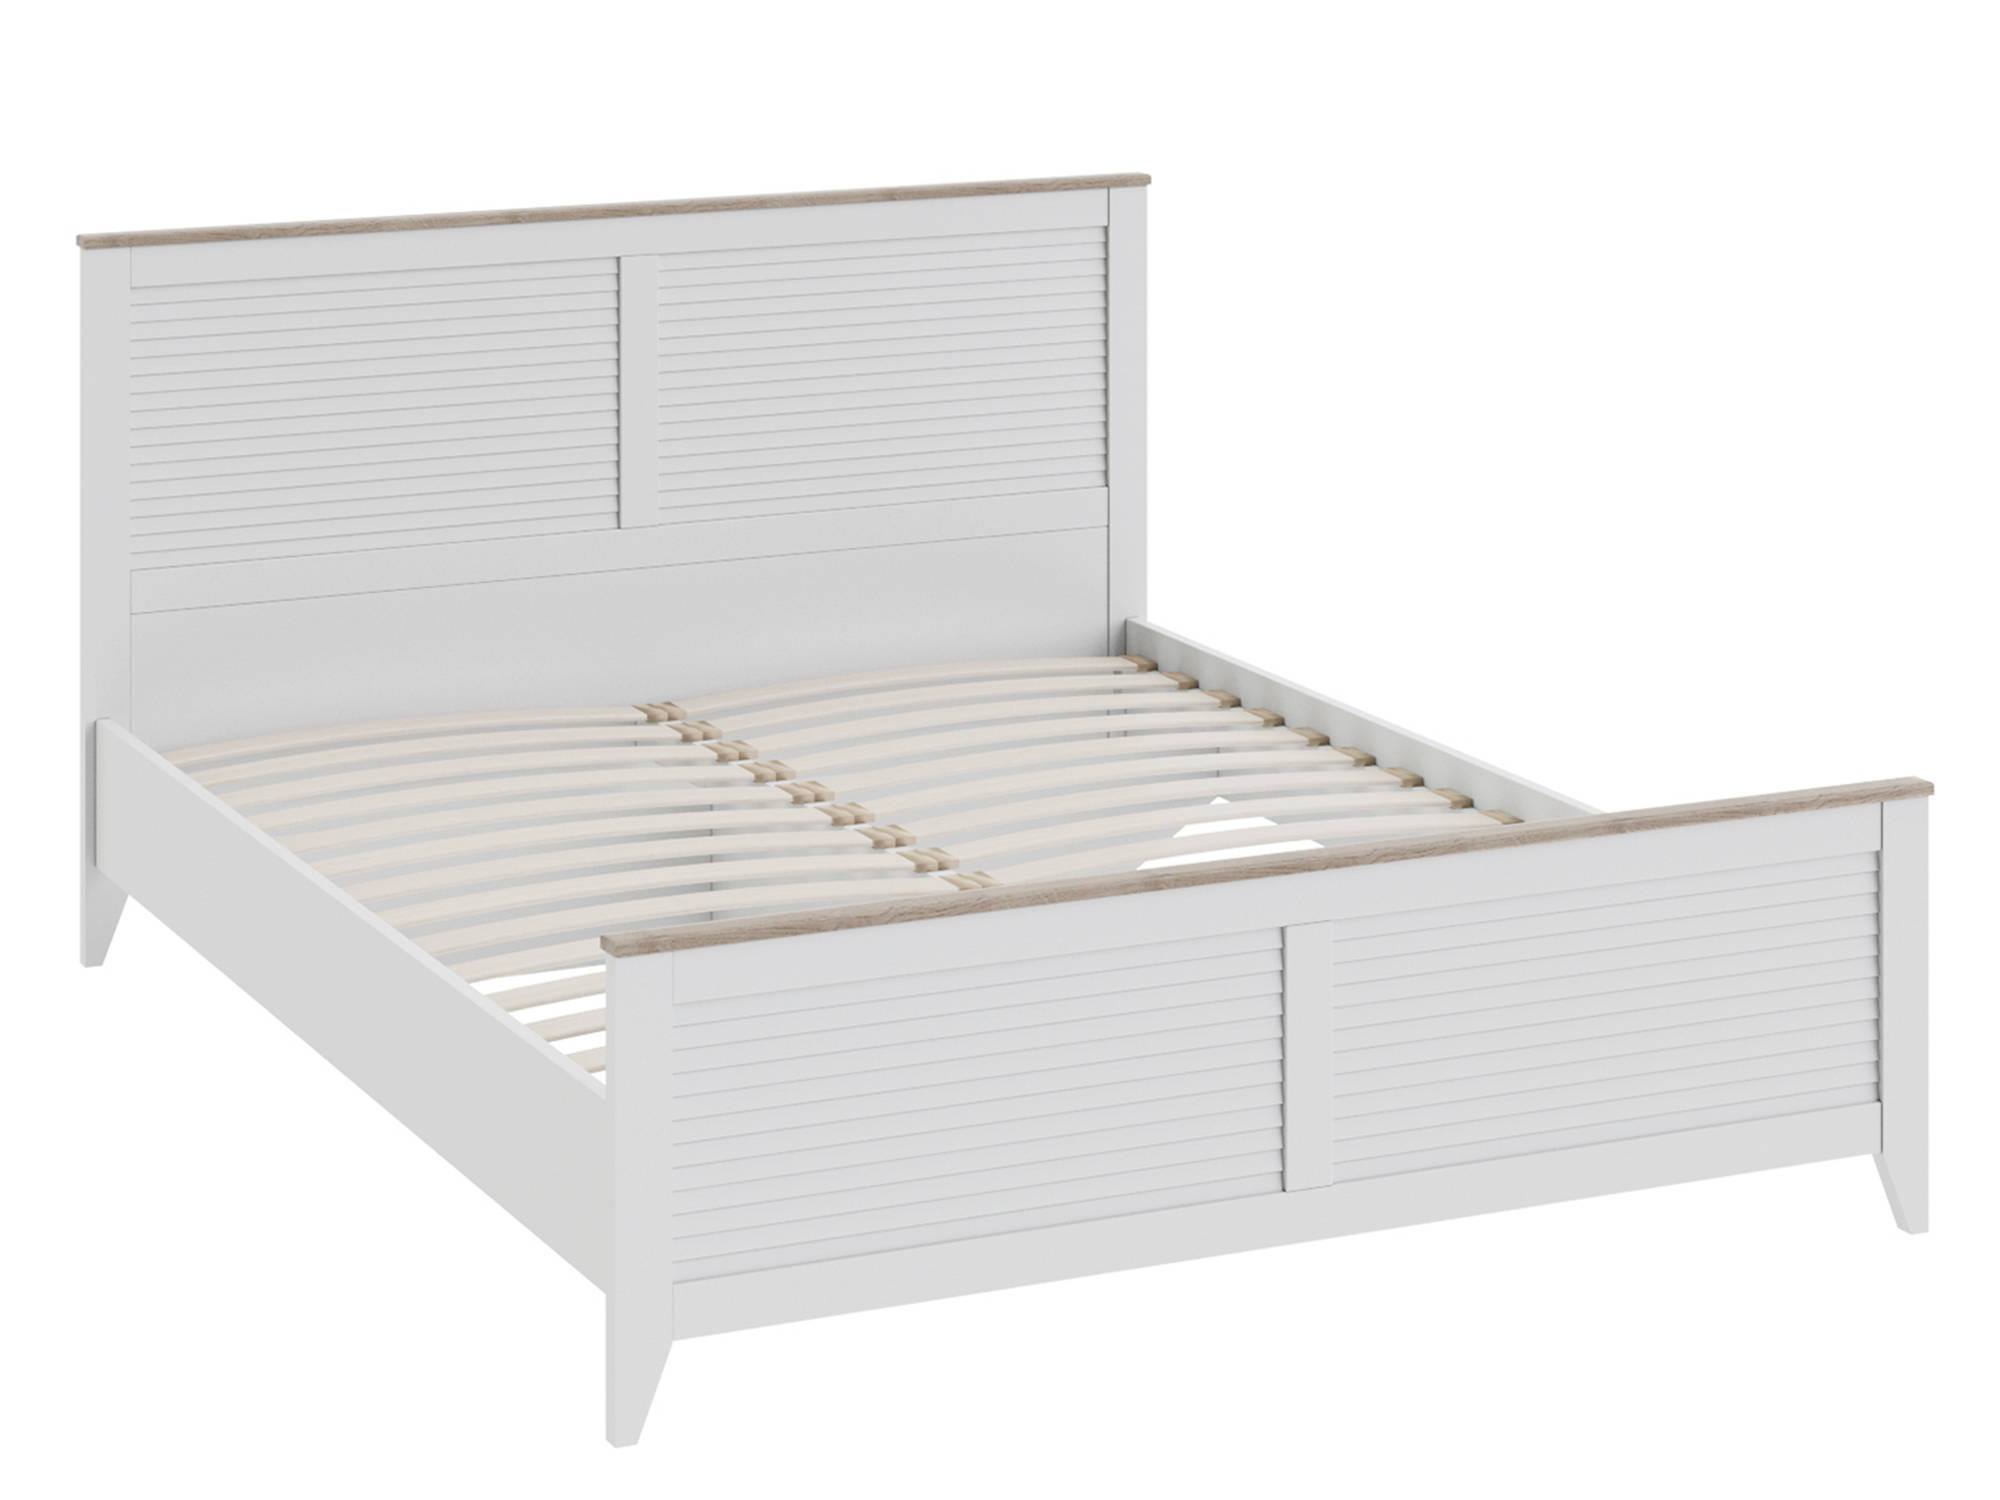 Кровать Ривьера (160х200) Белый, Бежевый, МДФ, Массив, ЛДСП, Кромка ABS кровать с пм лорена 160х200 штрихлак белый лдсп ппу кромка abs